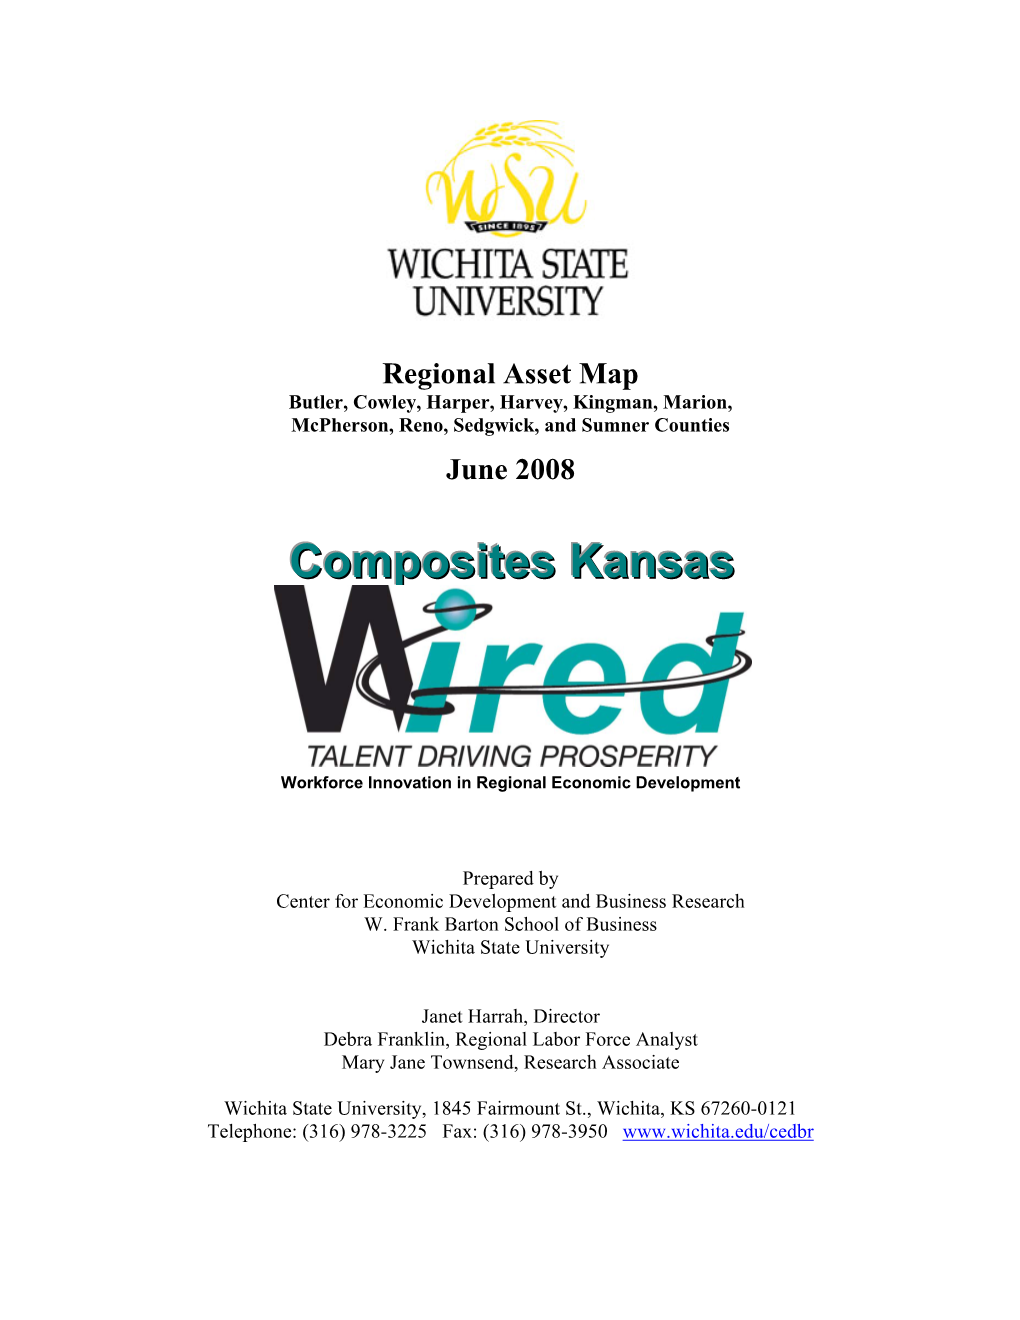 Composites Kansas Wired Region